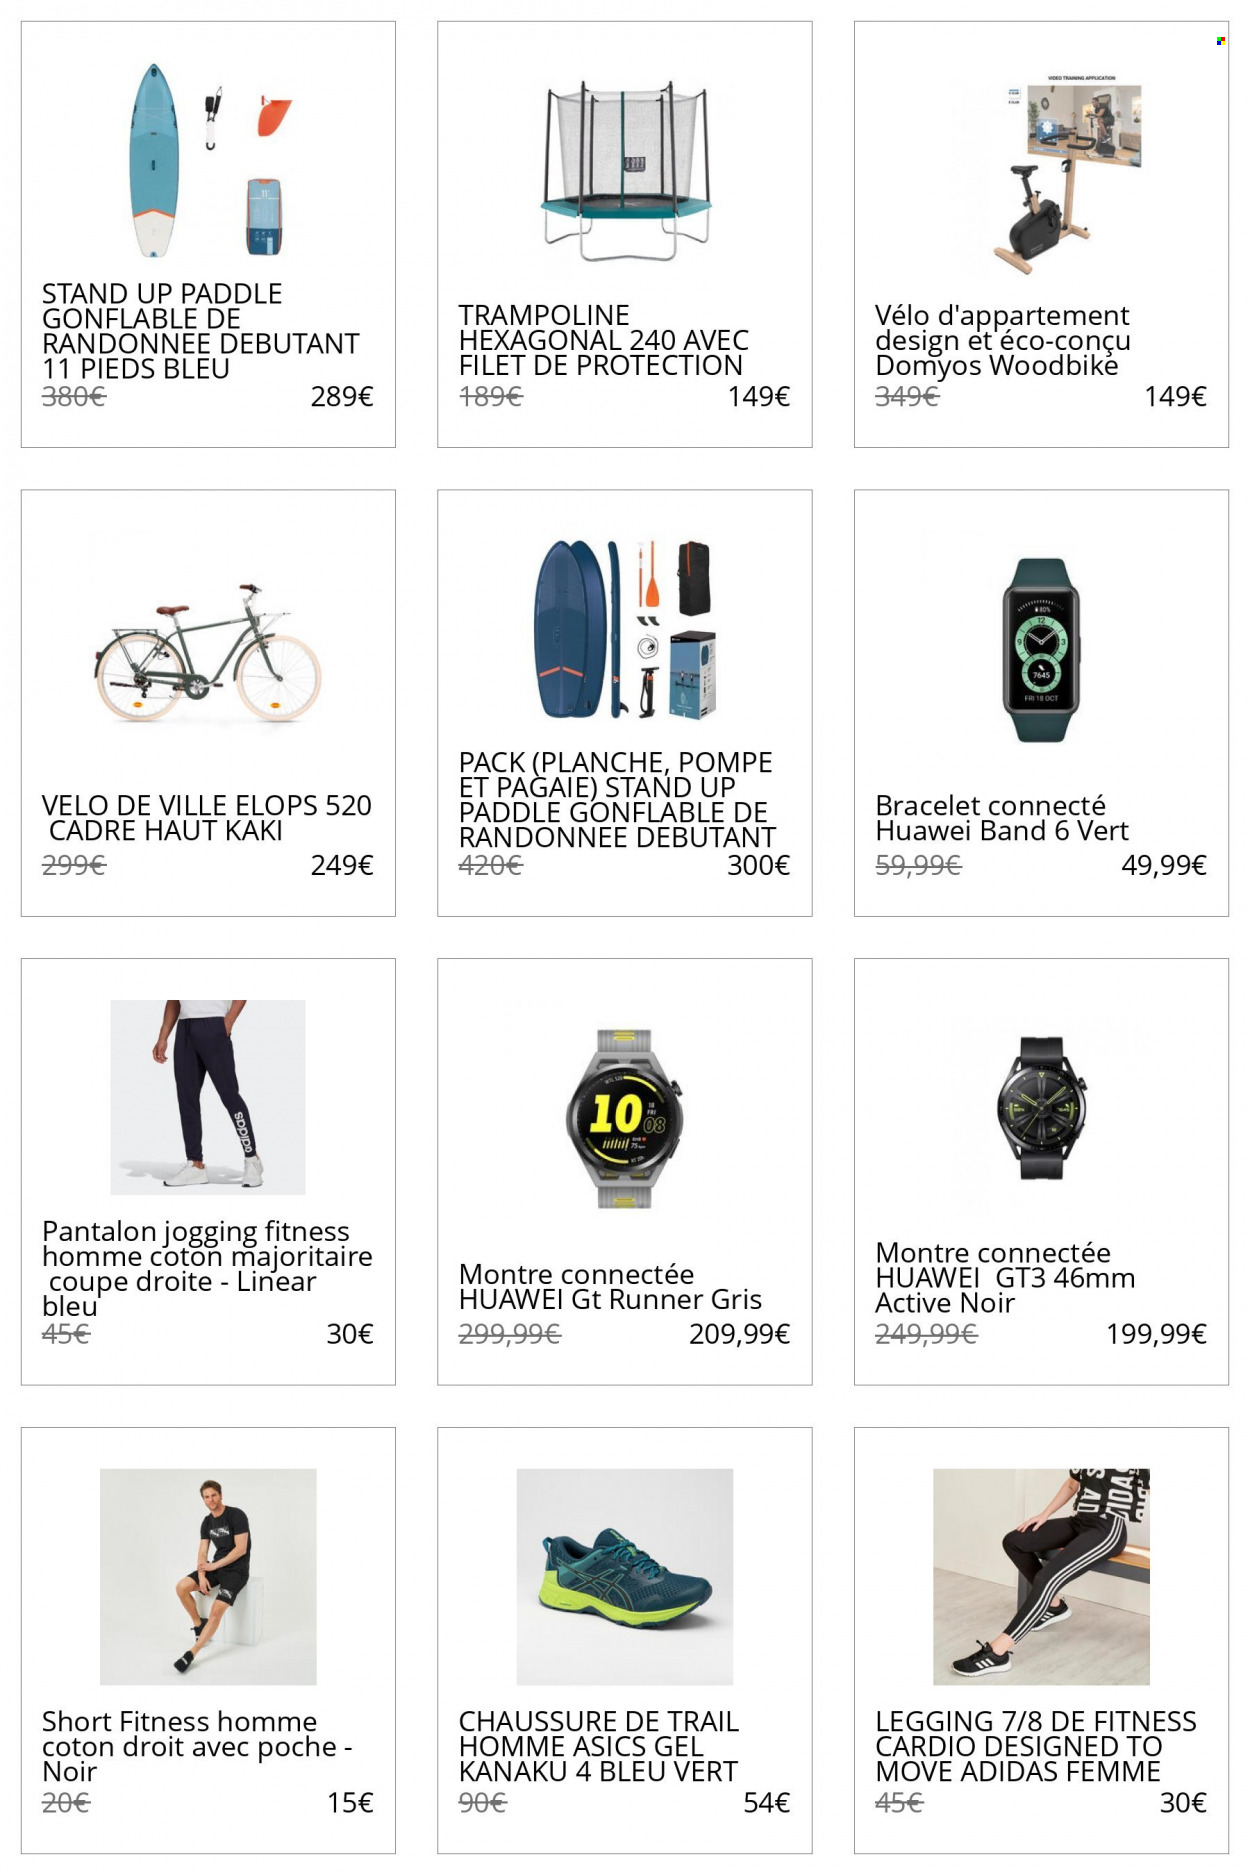 thumbnail - Catalogue Decathlon - Produits soldés - Adidas, Asics, chaussure, Huawei, montre, montre connectée, shorts, pantalon, leggings, bracelet, vélo d'appartement, trampoline. Page 1.